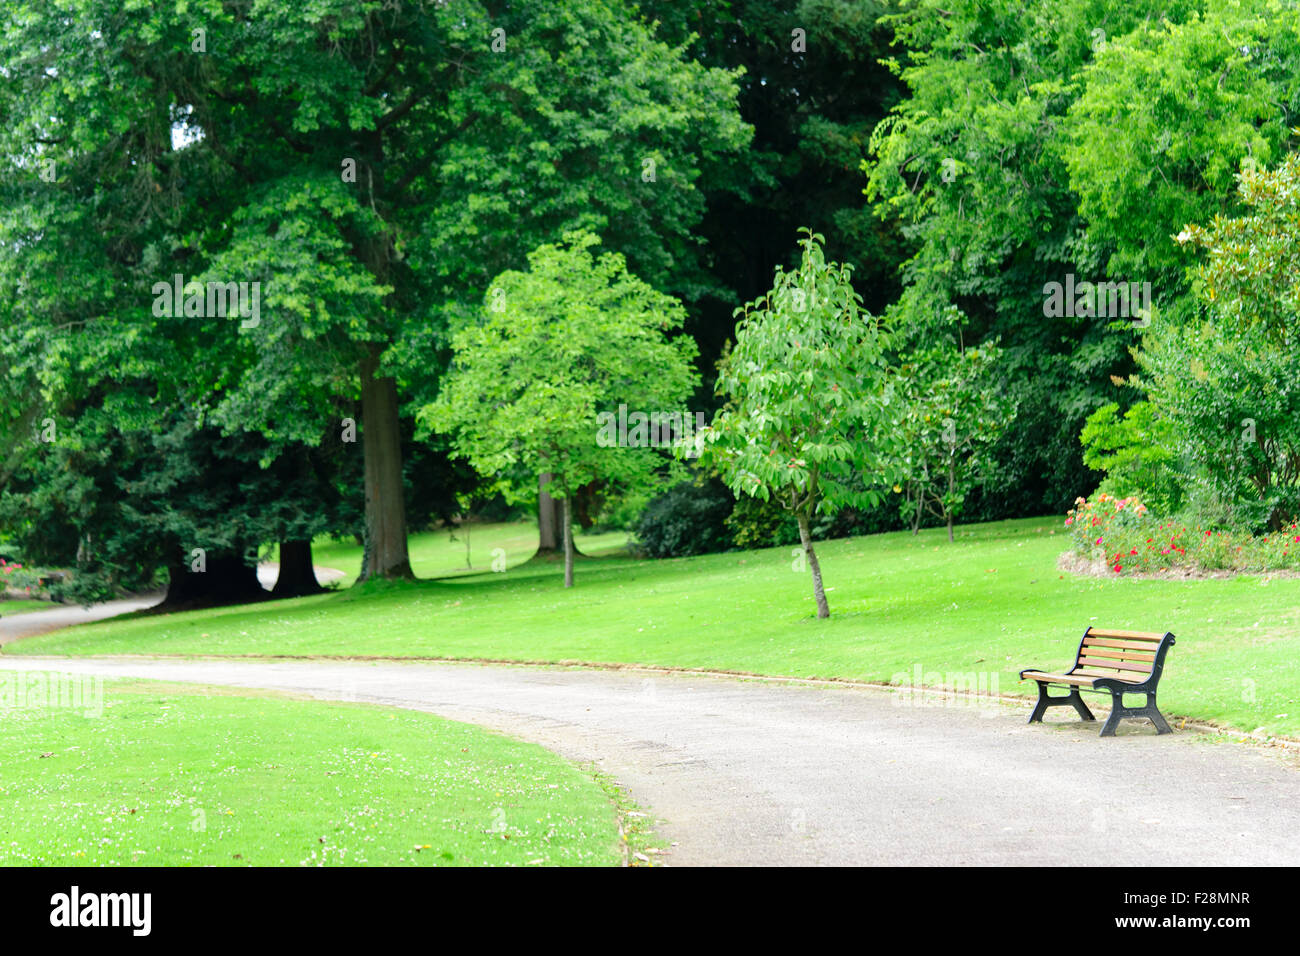 Parc de la Beaujoire nantes france Stock Photo - Alamy